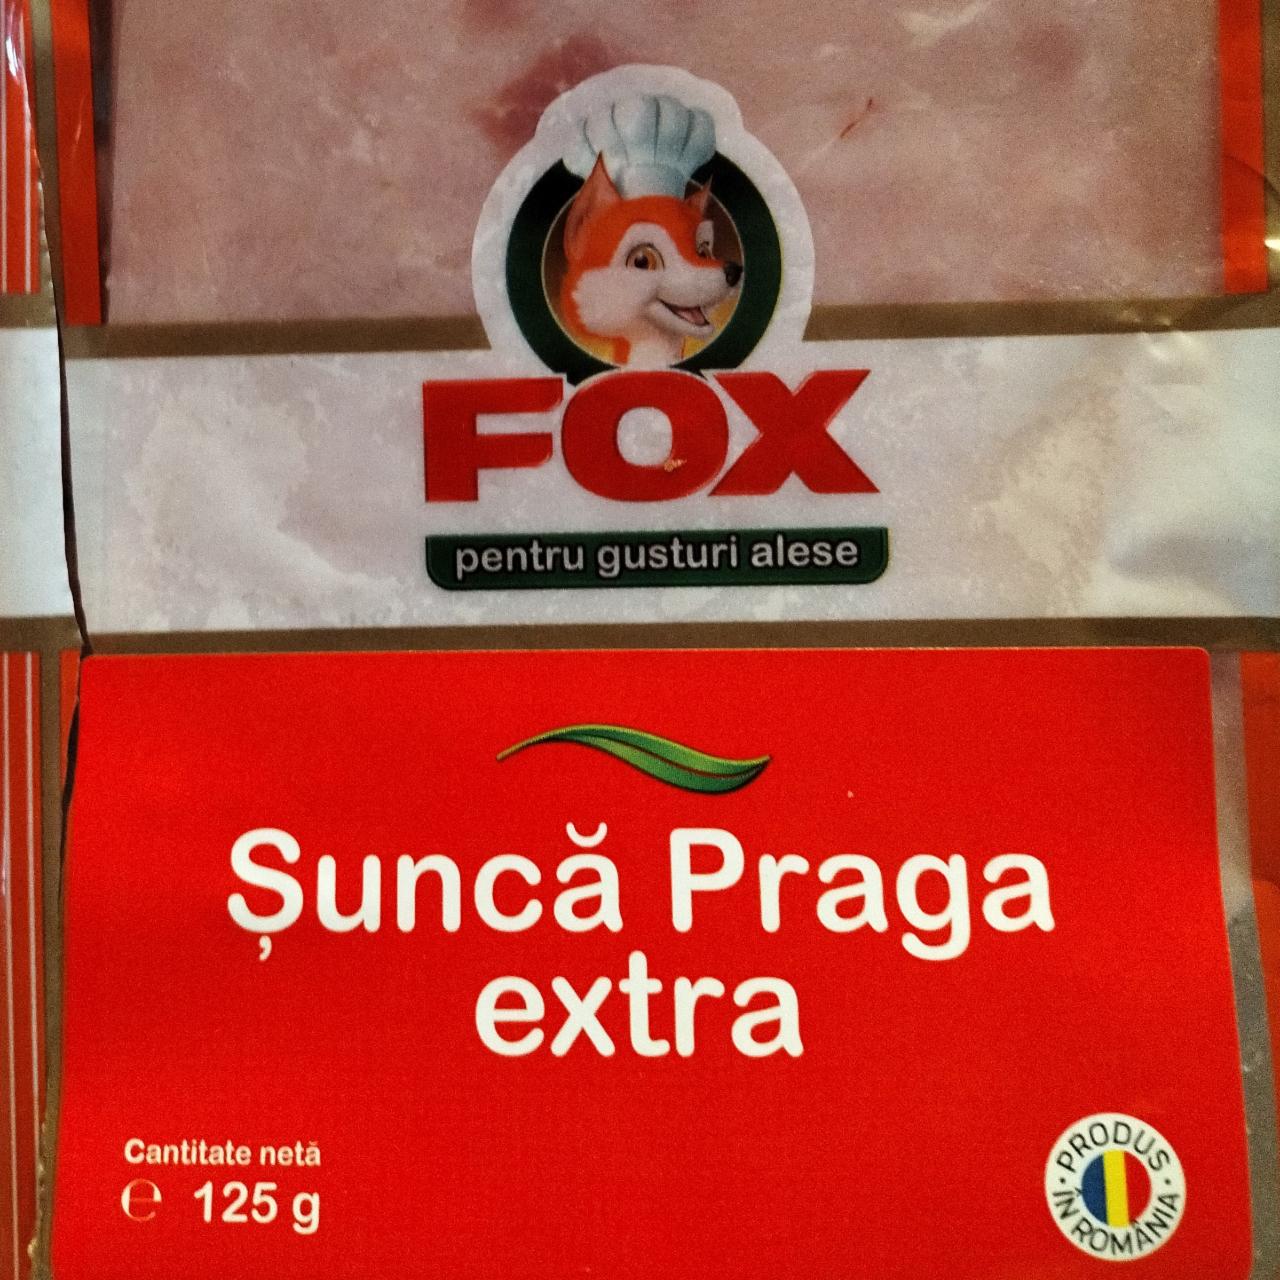 Képek - Prágai sonka extra Fox